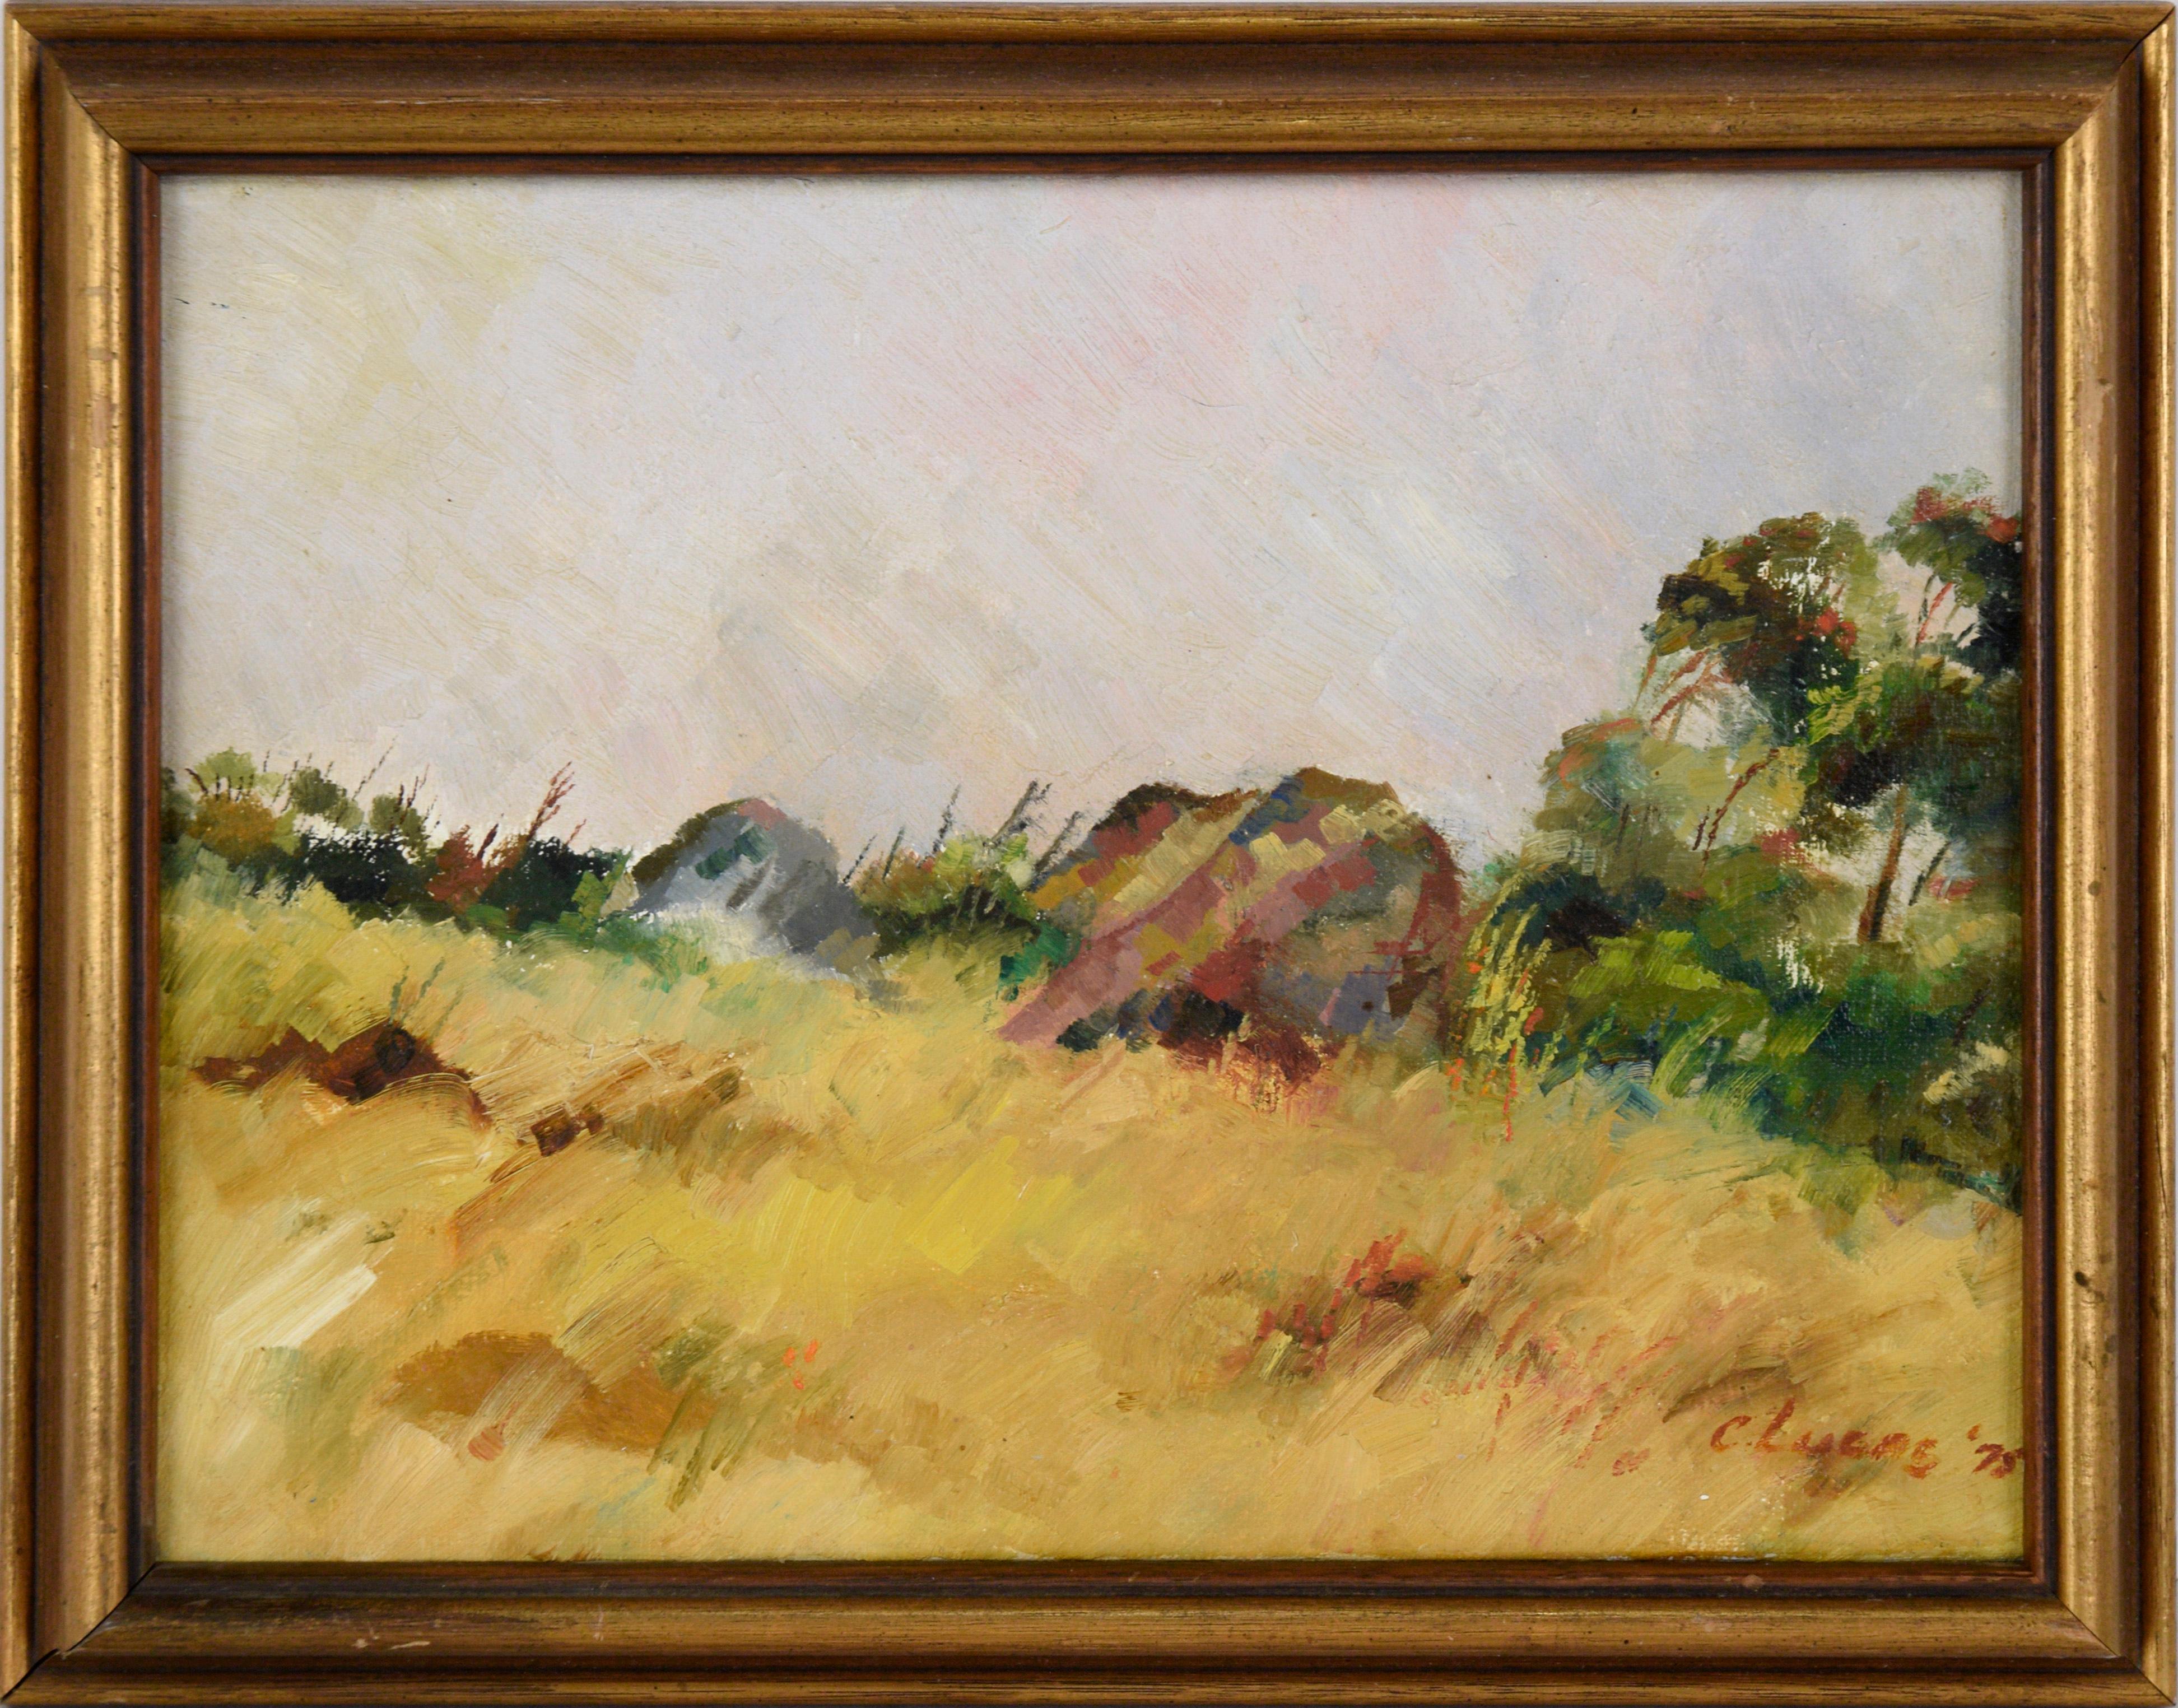 C. Lucas Landscape Painting - Golden Field Plein Aire Landscape in Oil on Linen